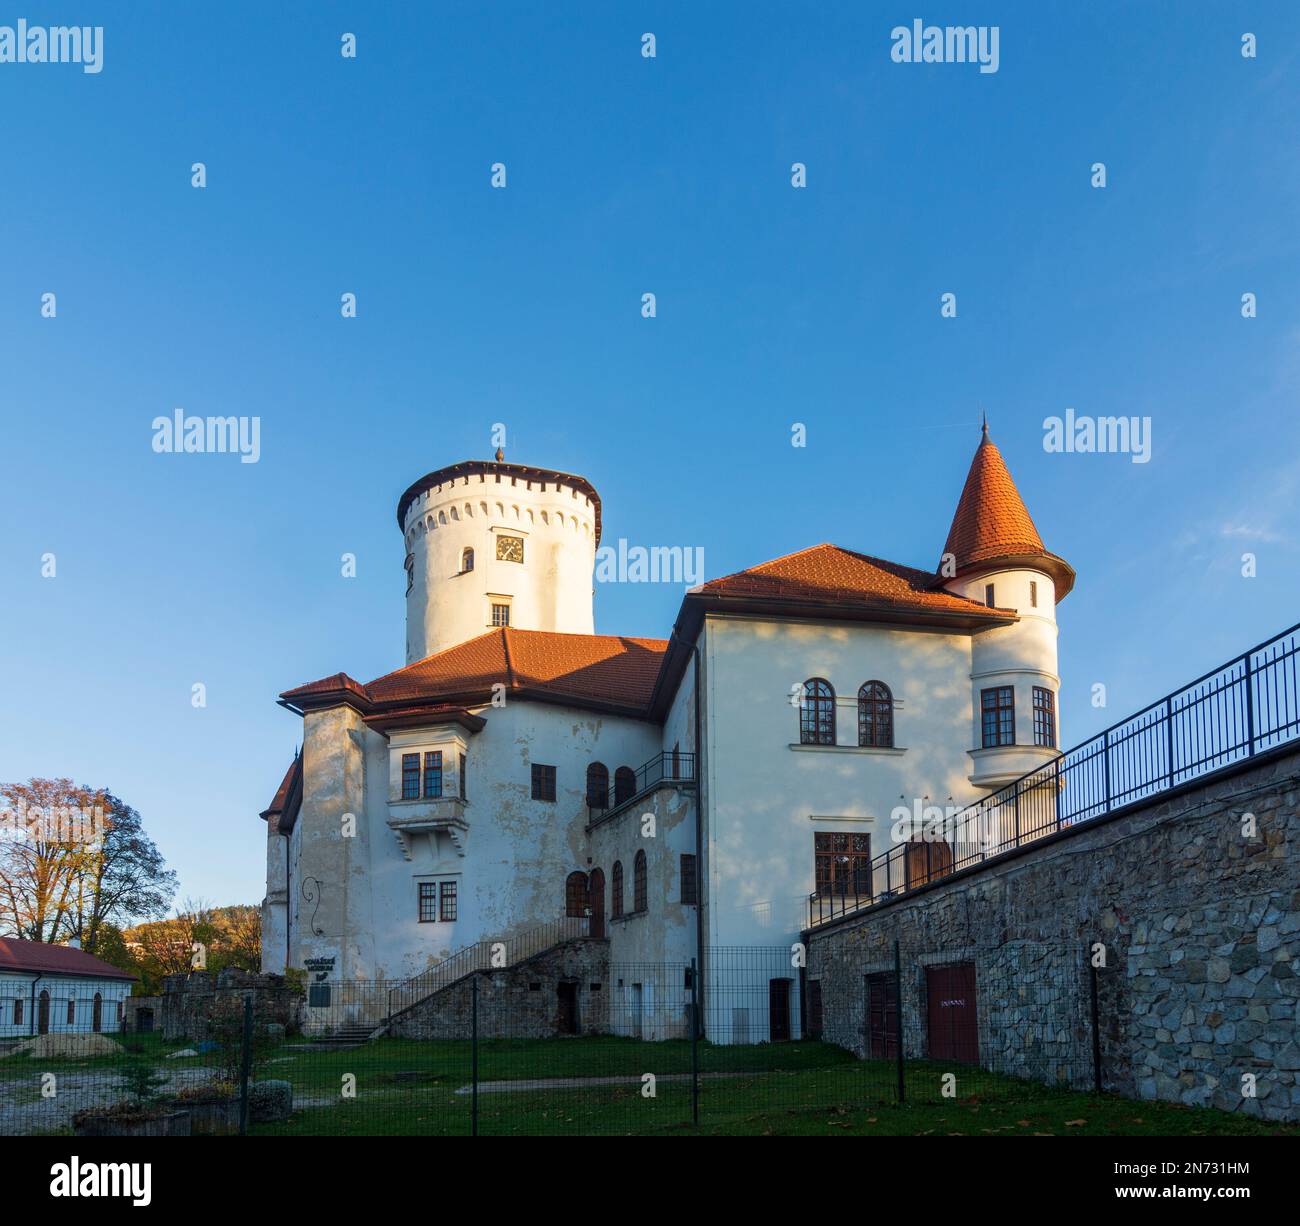 Zilina (Sillein, Silein), Budatin Castle (Budatinsky zamok) in Slovakia Stock Photo